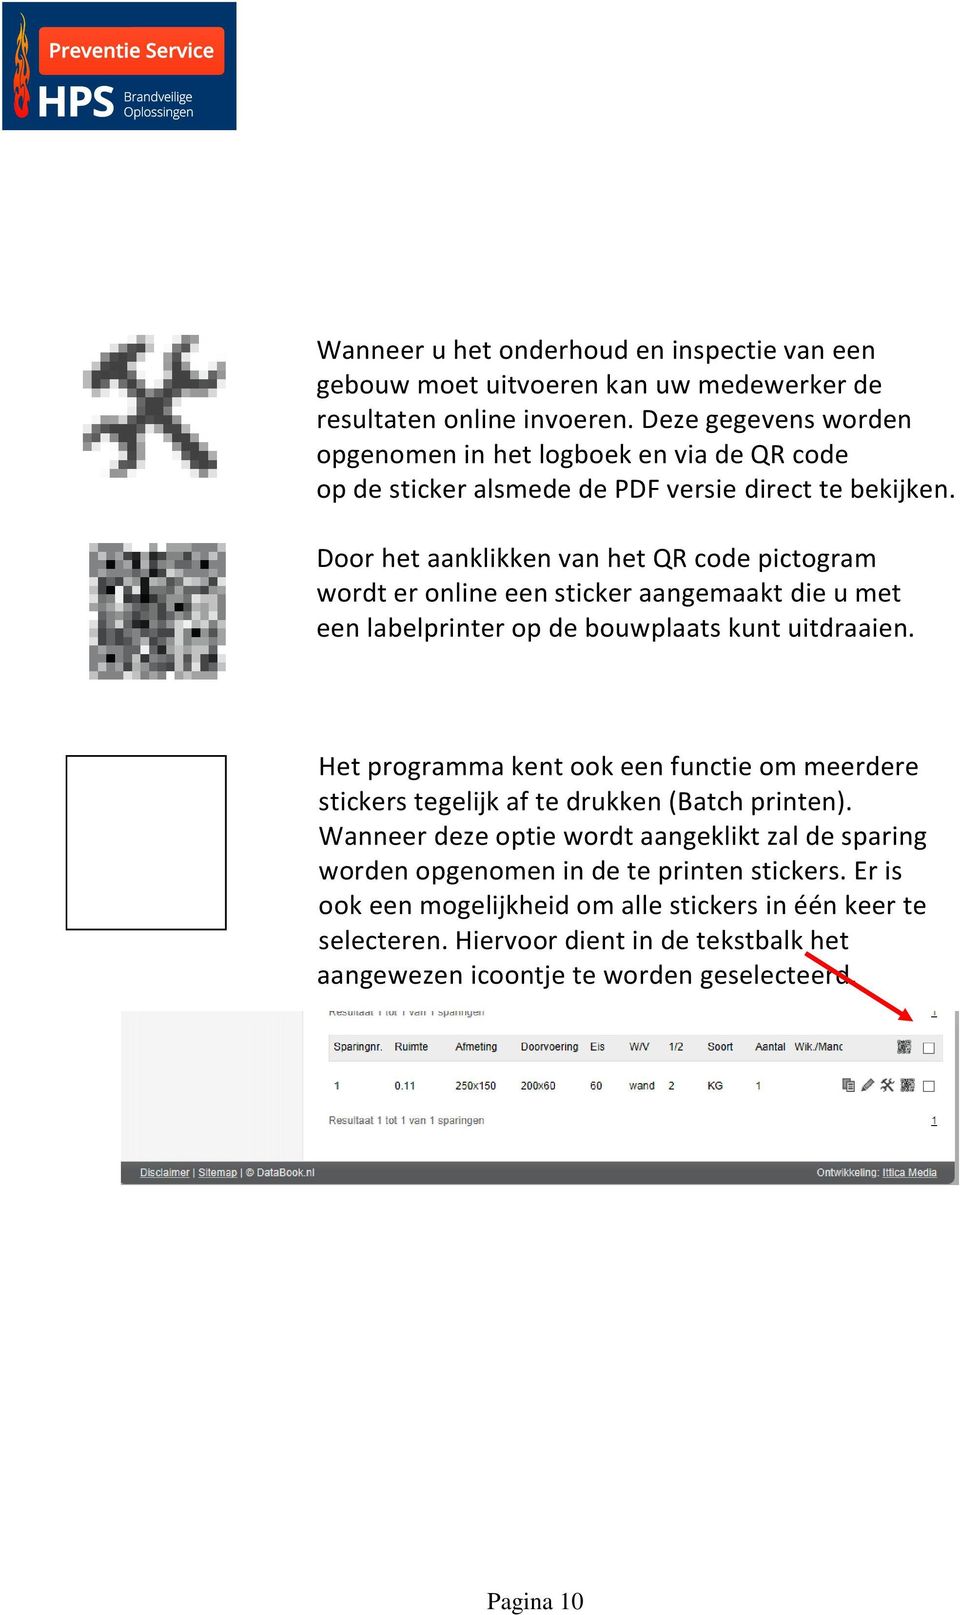 Door het aanklikken van het QR code pictogram wordt er online een sticker aangemaakt die u met een labelprinter op de bouwplaats kunt uitdraaien.